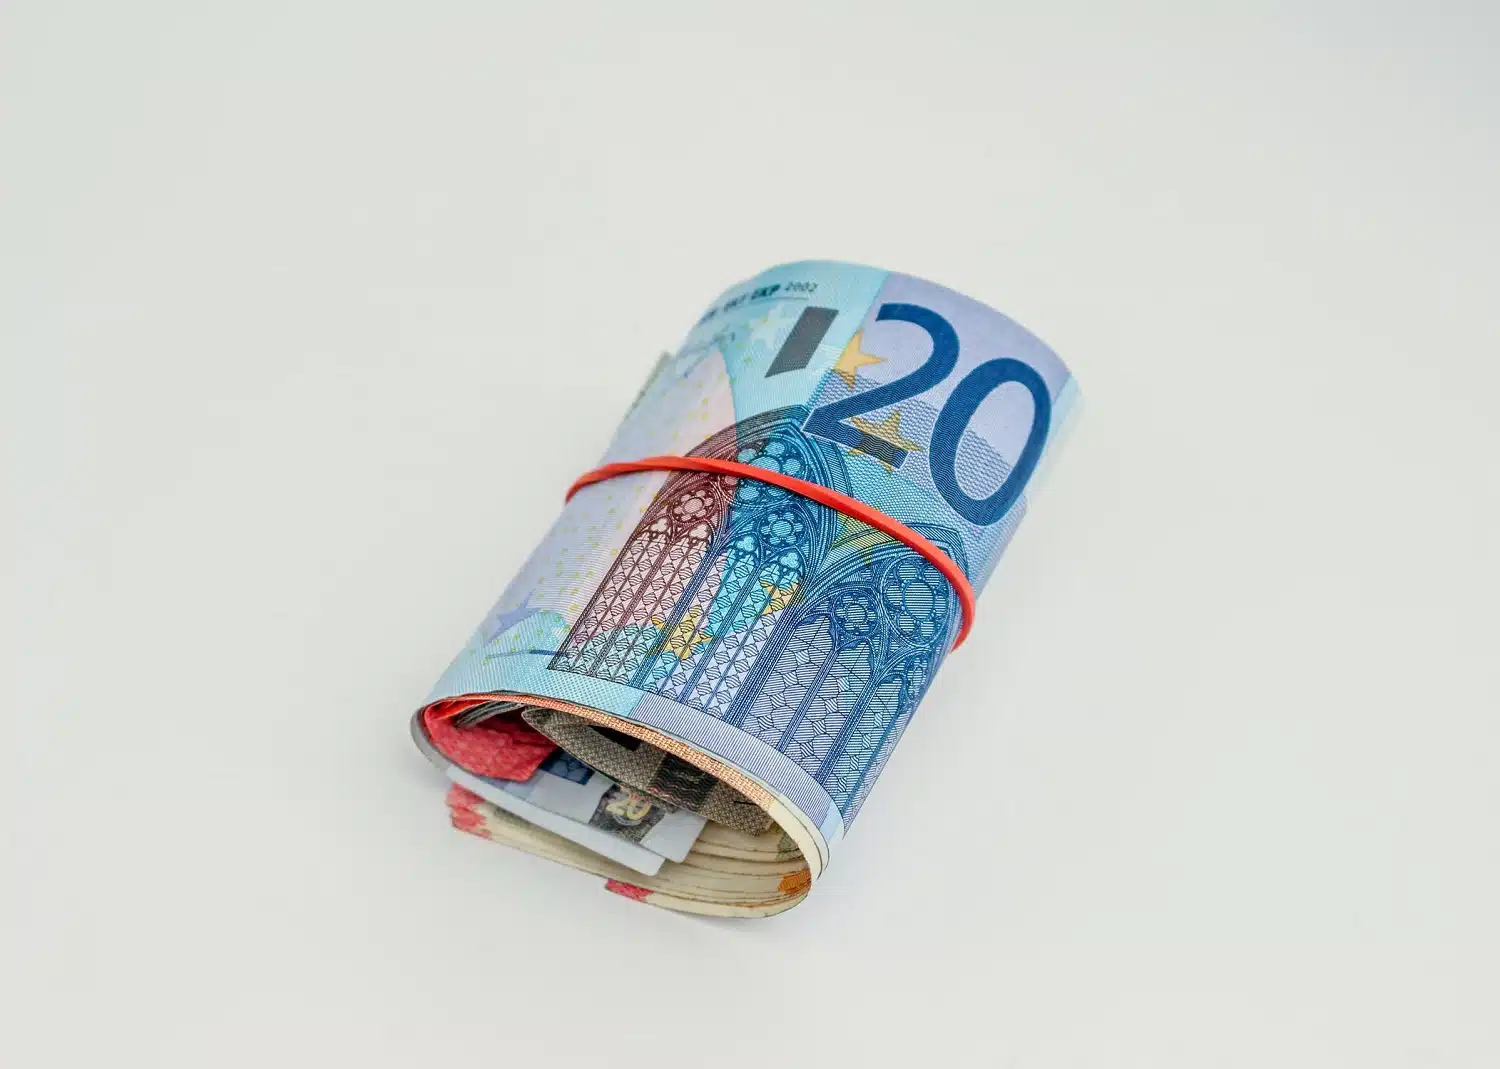 banconote in euro arrotolate in un elastico rosso